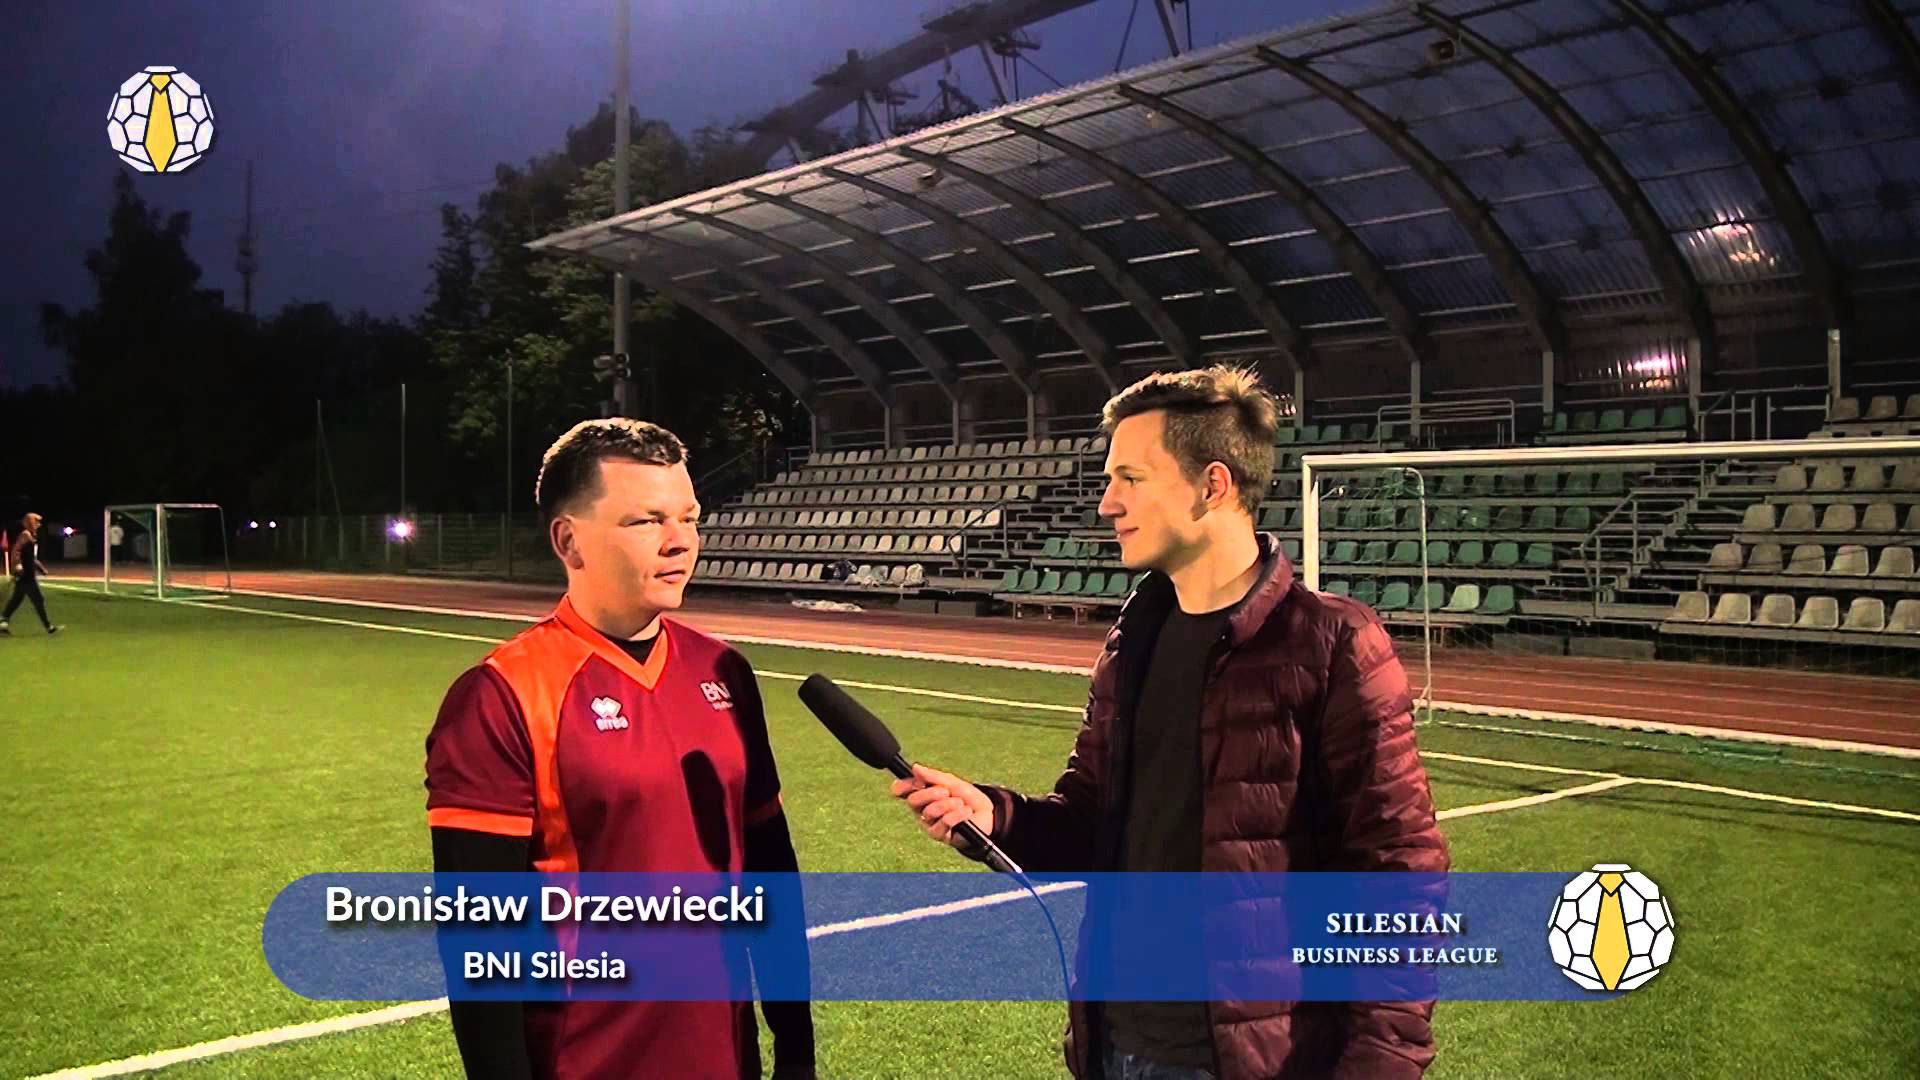 Wywiad z Bronisławem Drzewieckim (BNI Silesia)